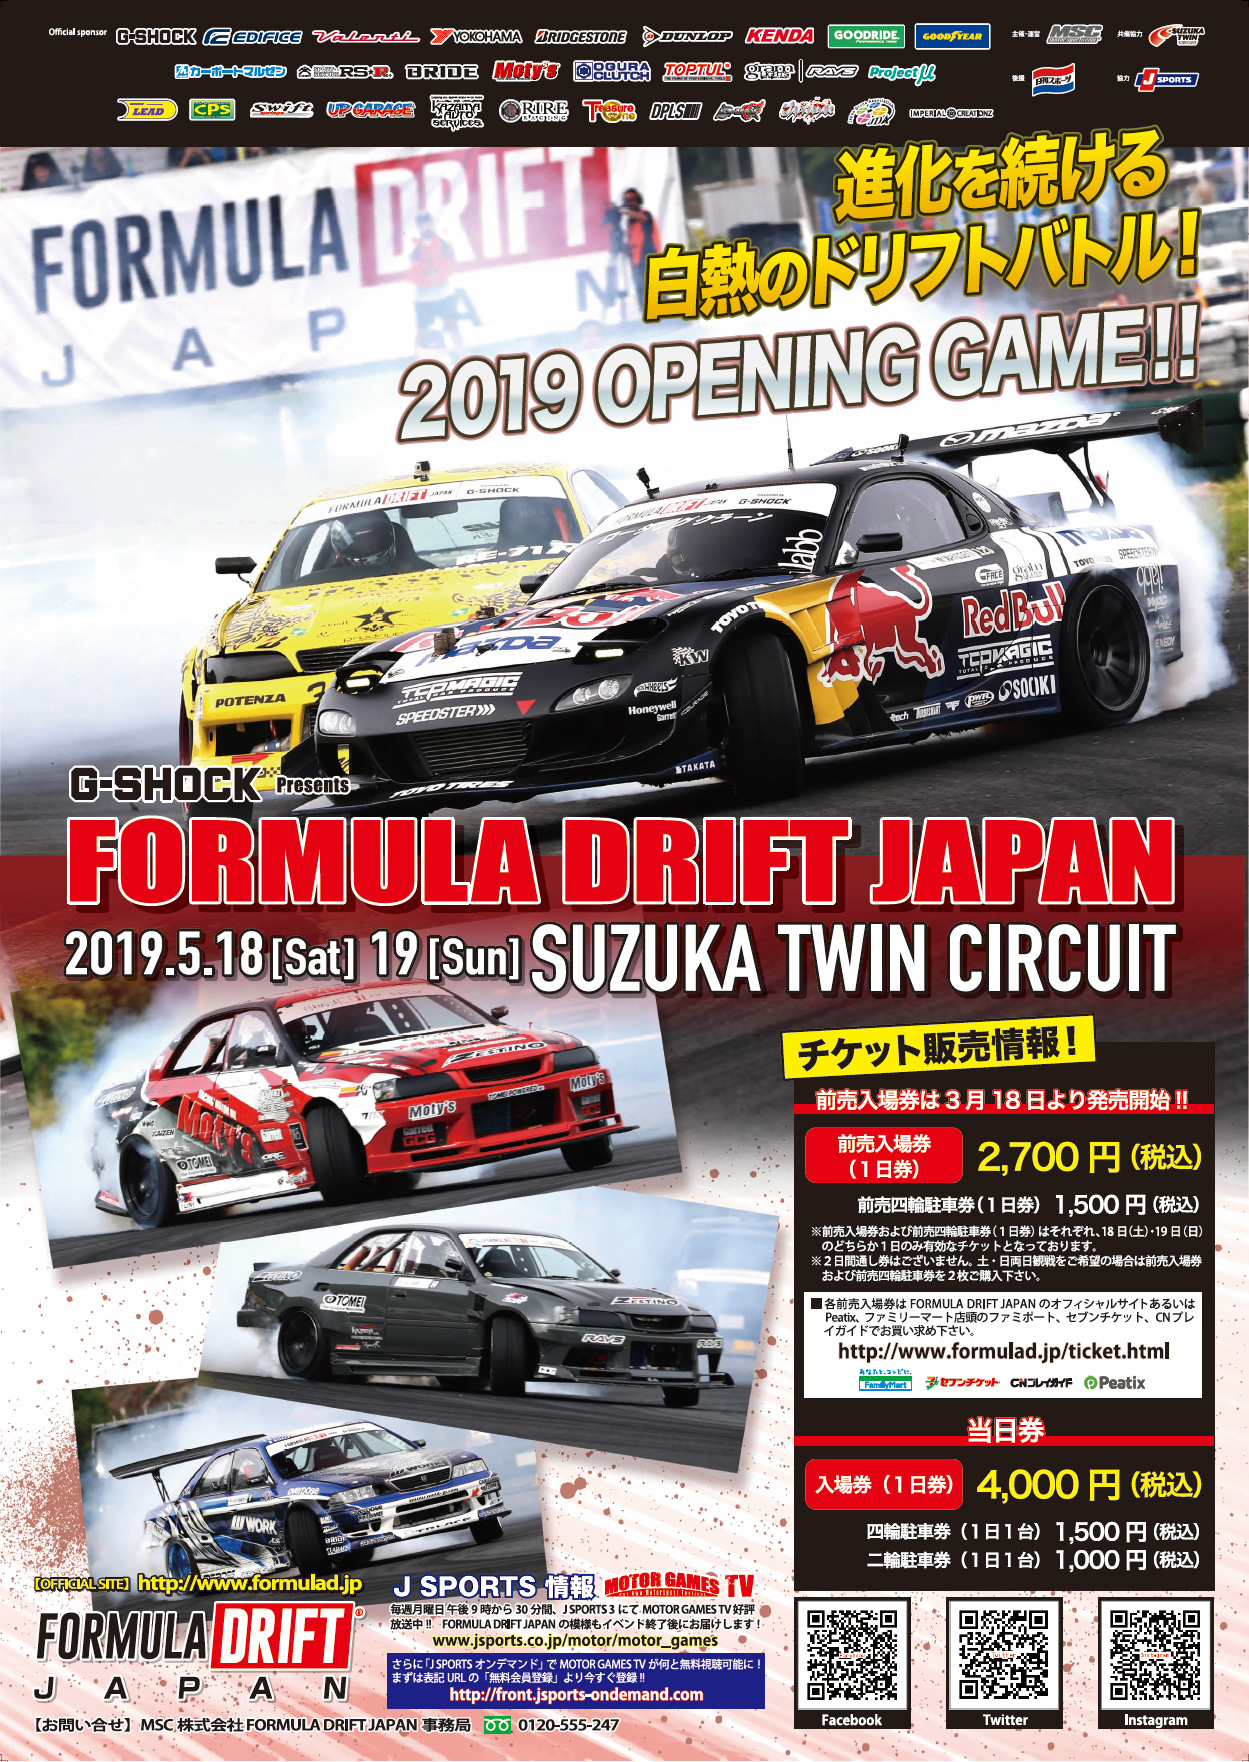 FORMULA DRIFT JAPAN – SUZUKA TWIN CIRCUIT (2019.5.18 / 19)